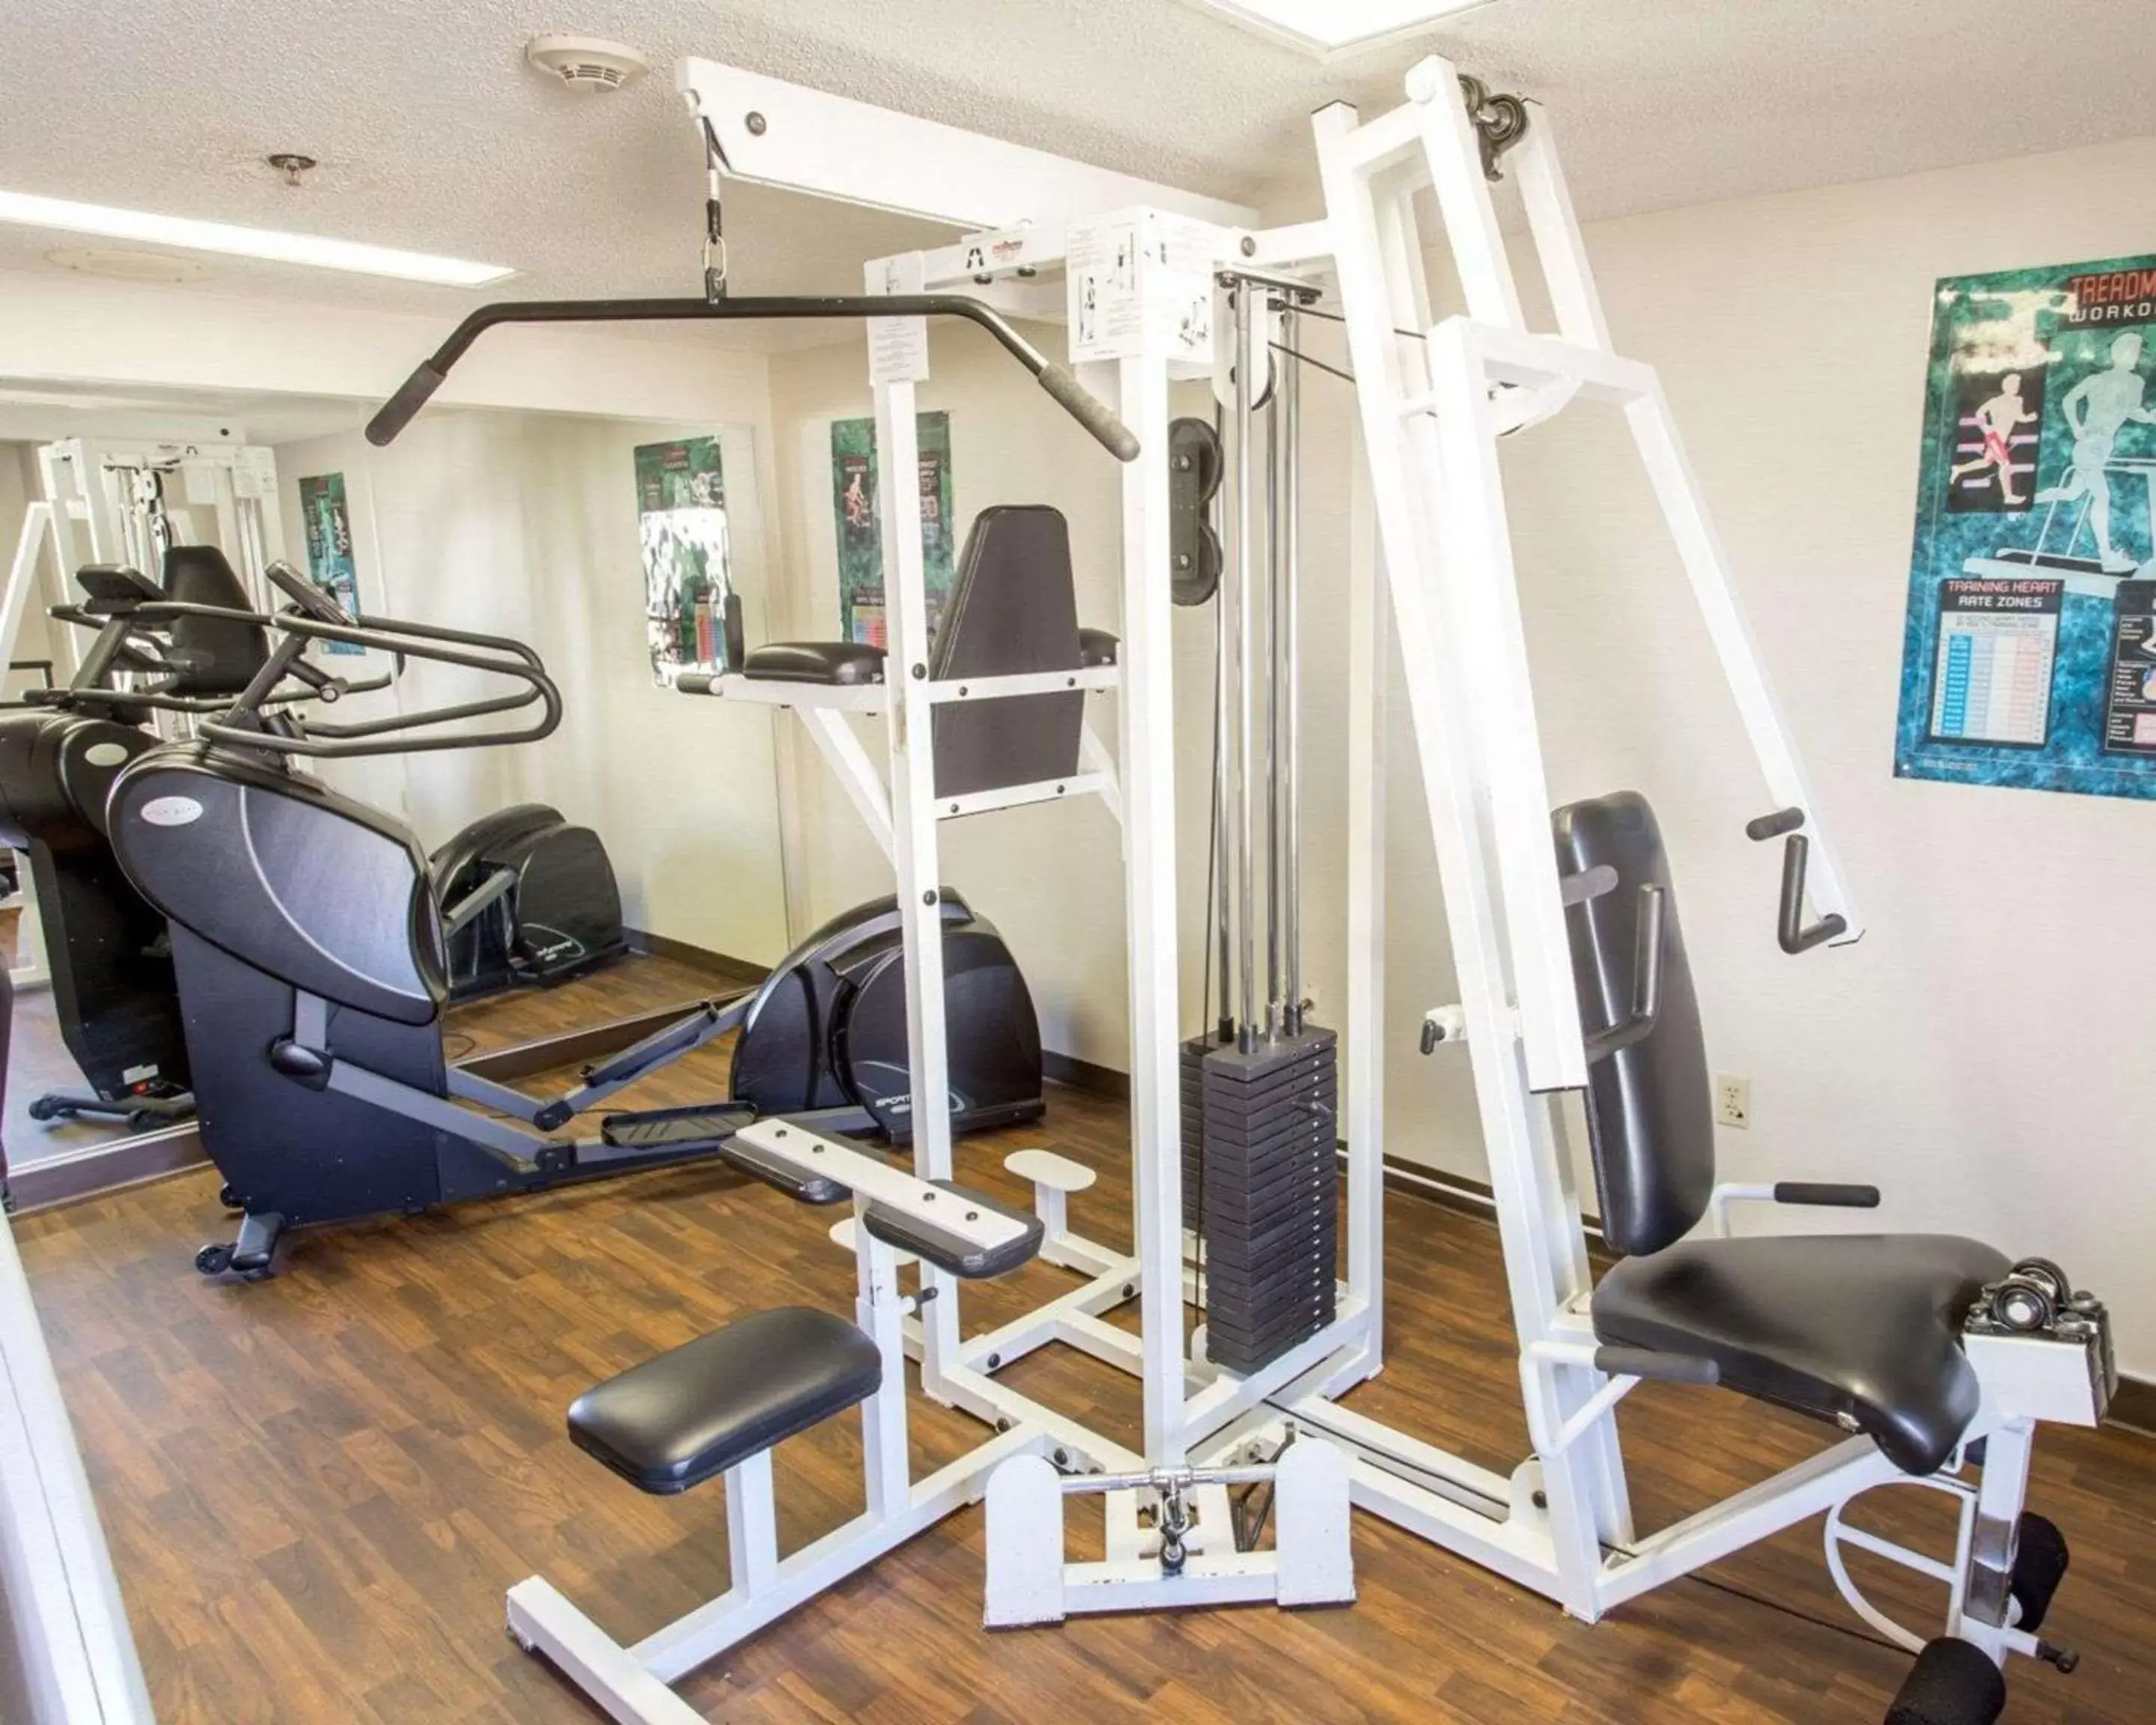 Fitness centre/facilities, Fitness Center/Facilities in Comfort Inn Hammond